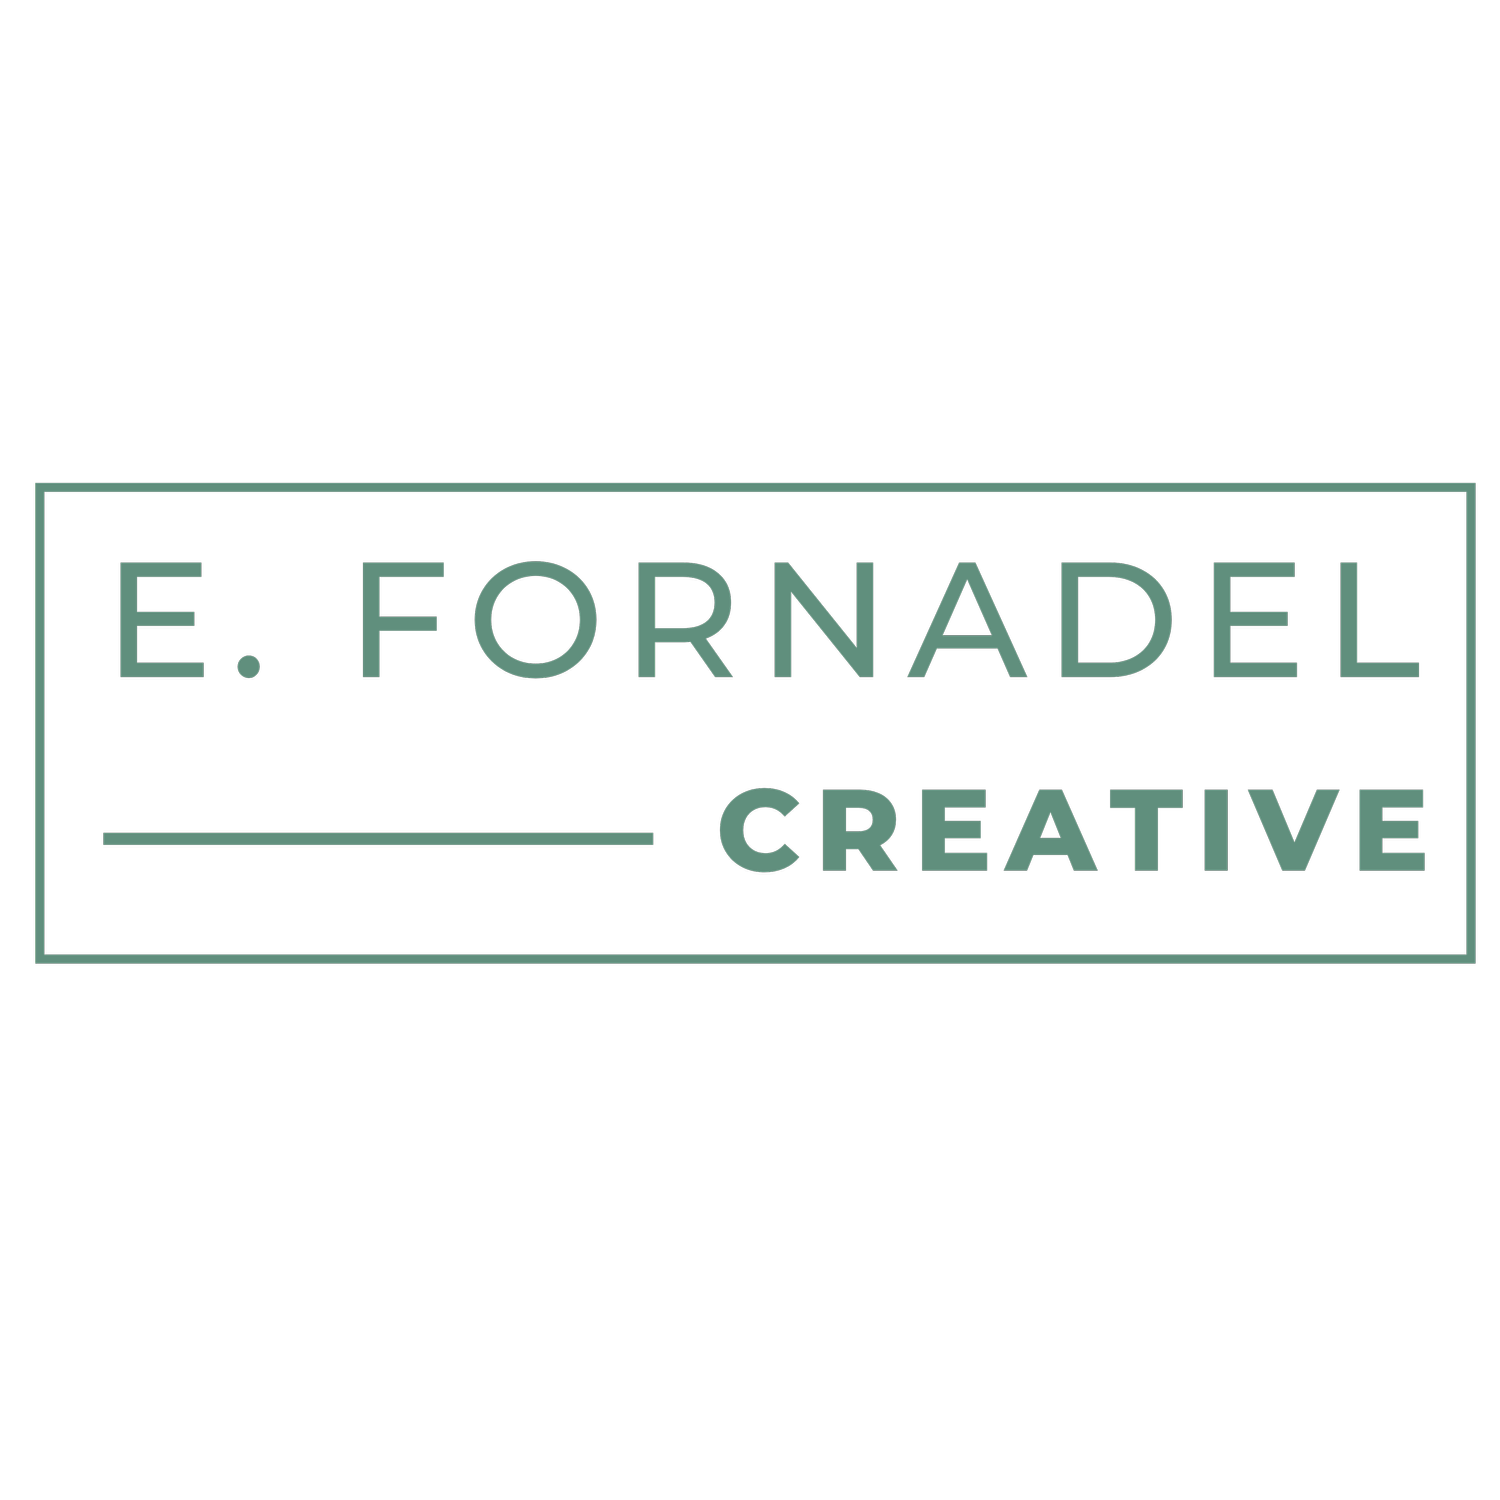 E. Fornadel Creative